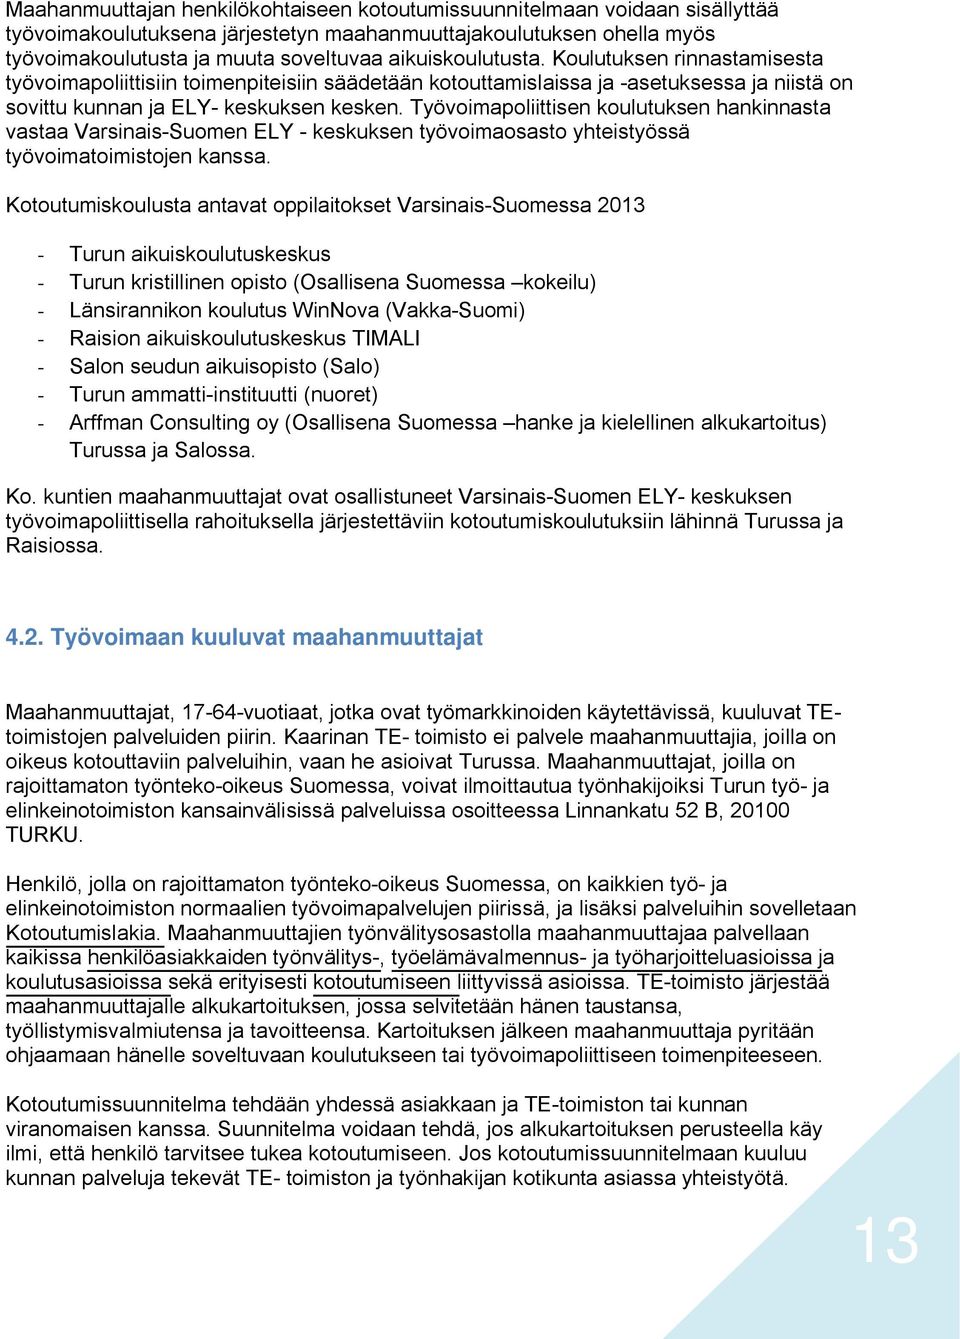 Työvoimapoliittisen koulutuksen hankinnasta vastaa Varsinais-Suomen ELY - keskuksen työvoimaosasto yhteistyössä työvoimatoimistojen kanssa.